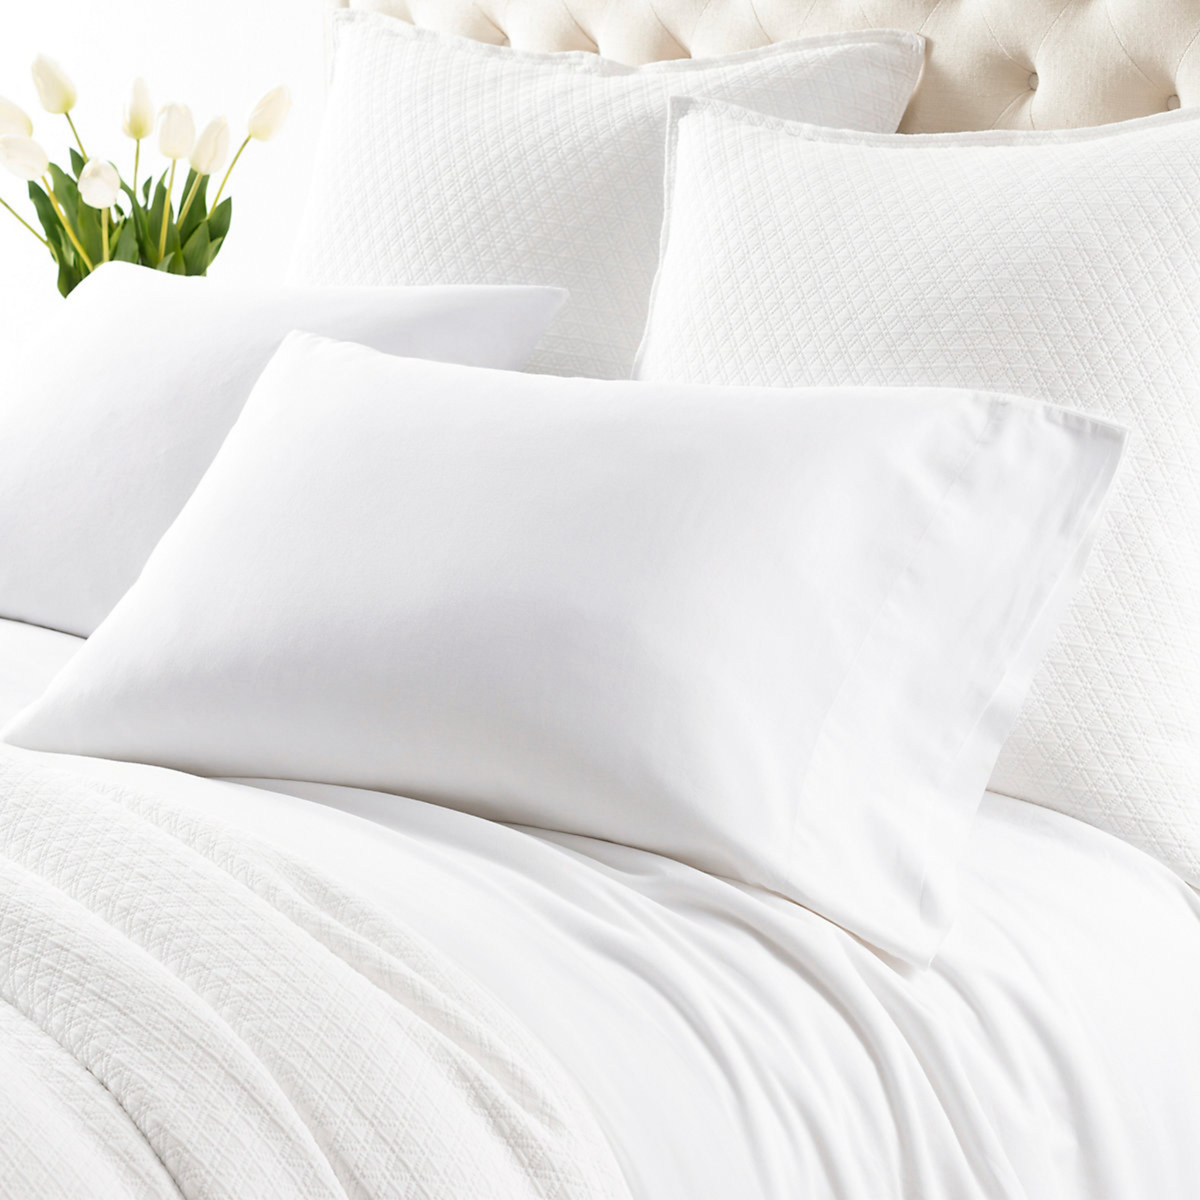 Pillowcase Closeup of Pine Cone Hill Cozy Cotton Bedding in White Color